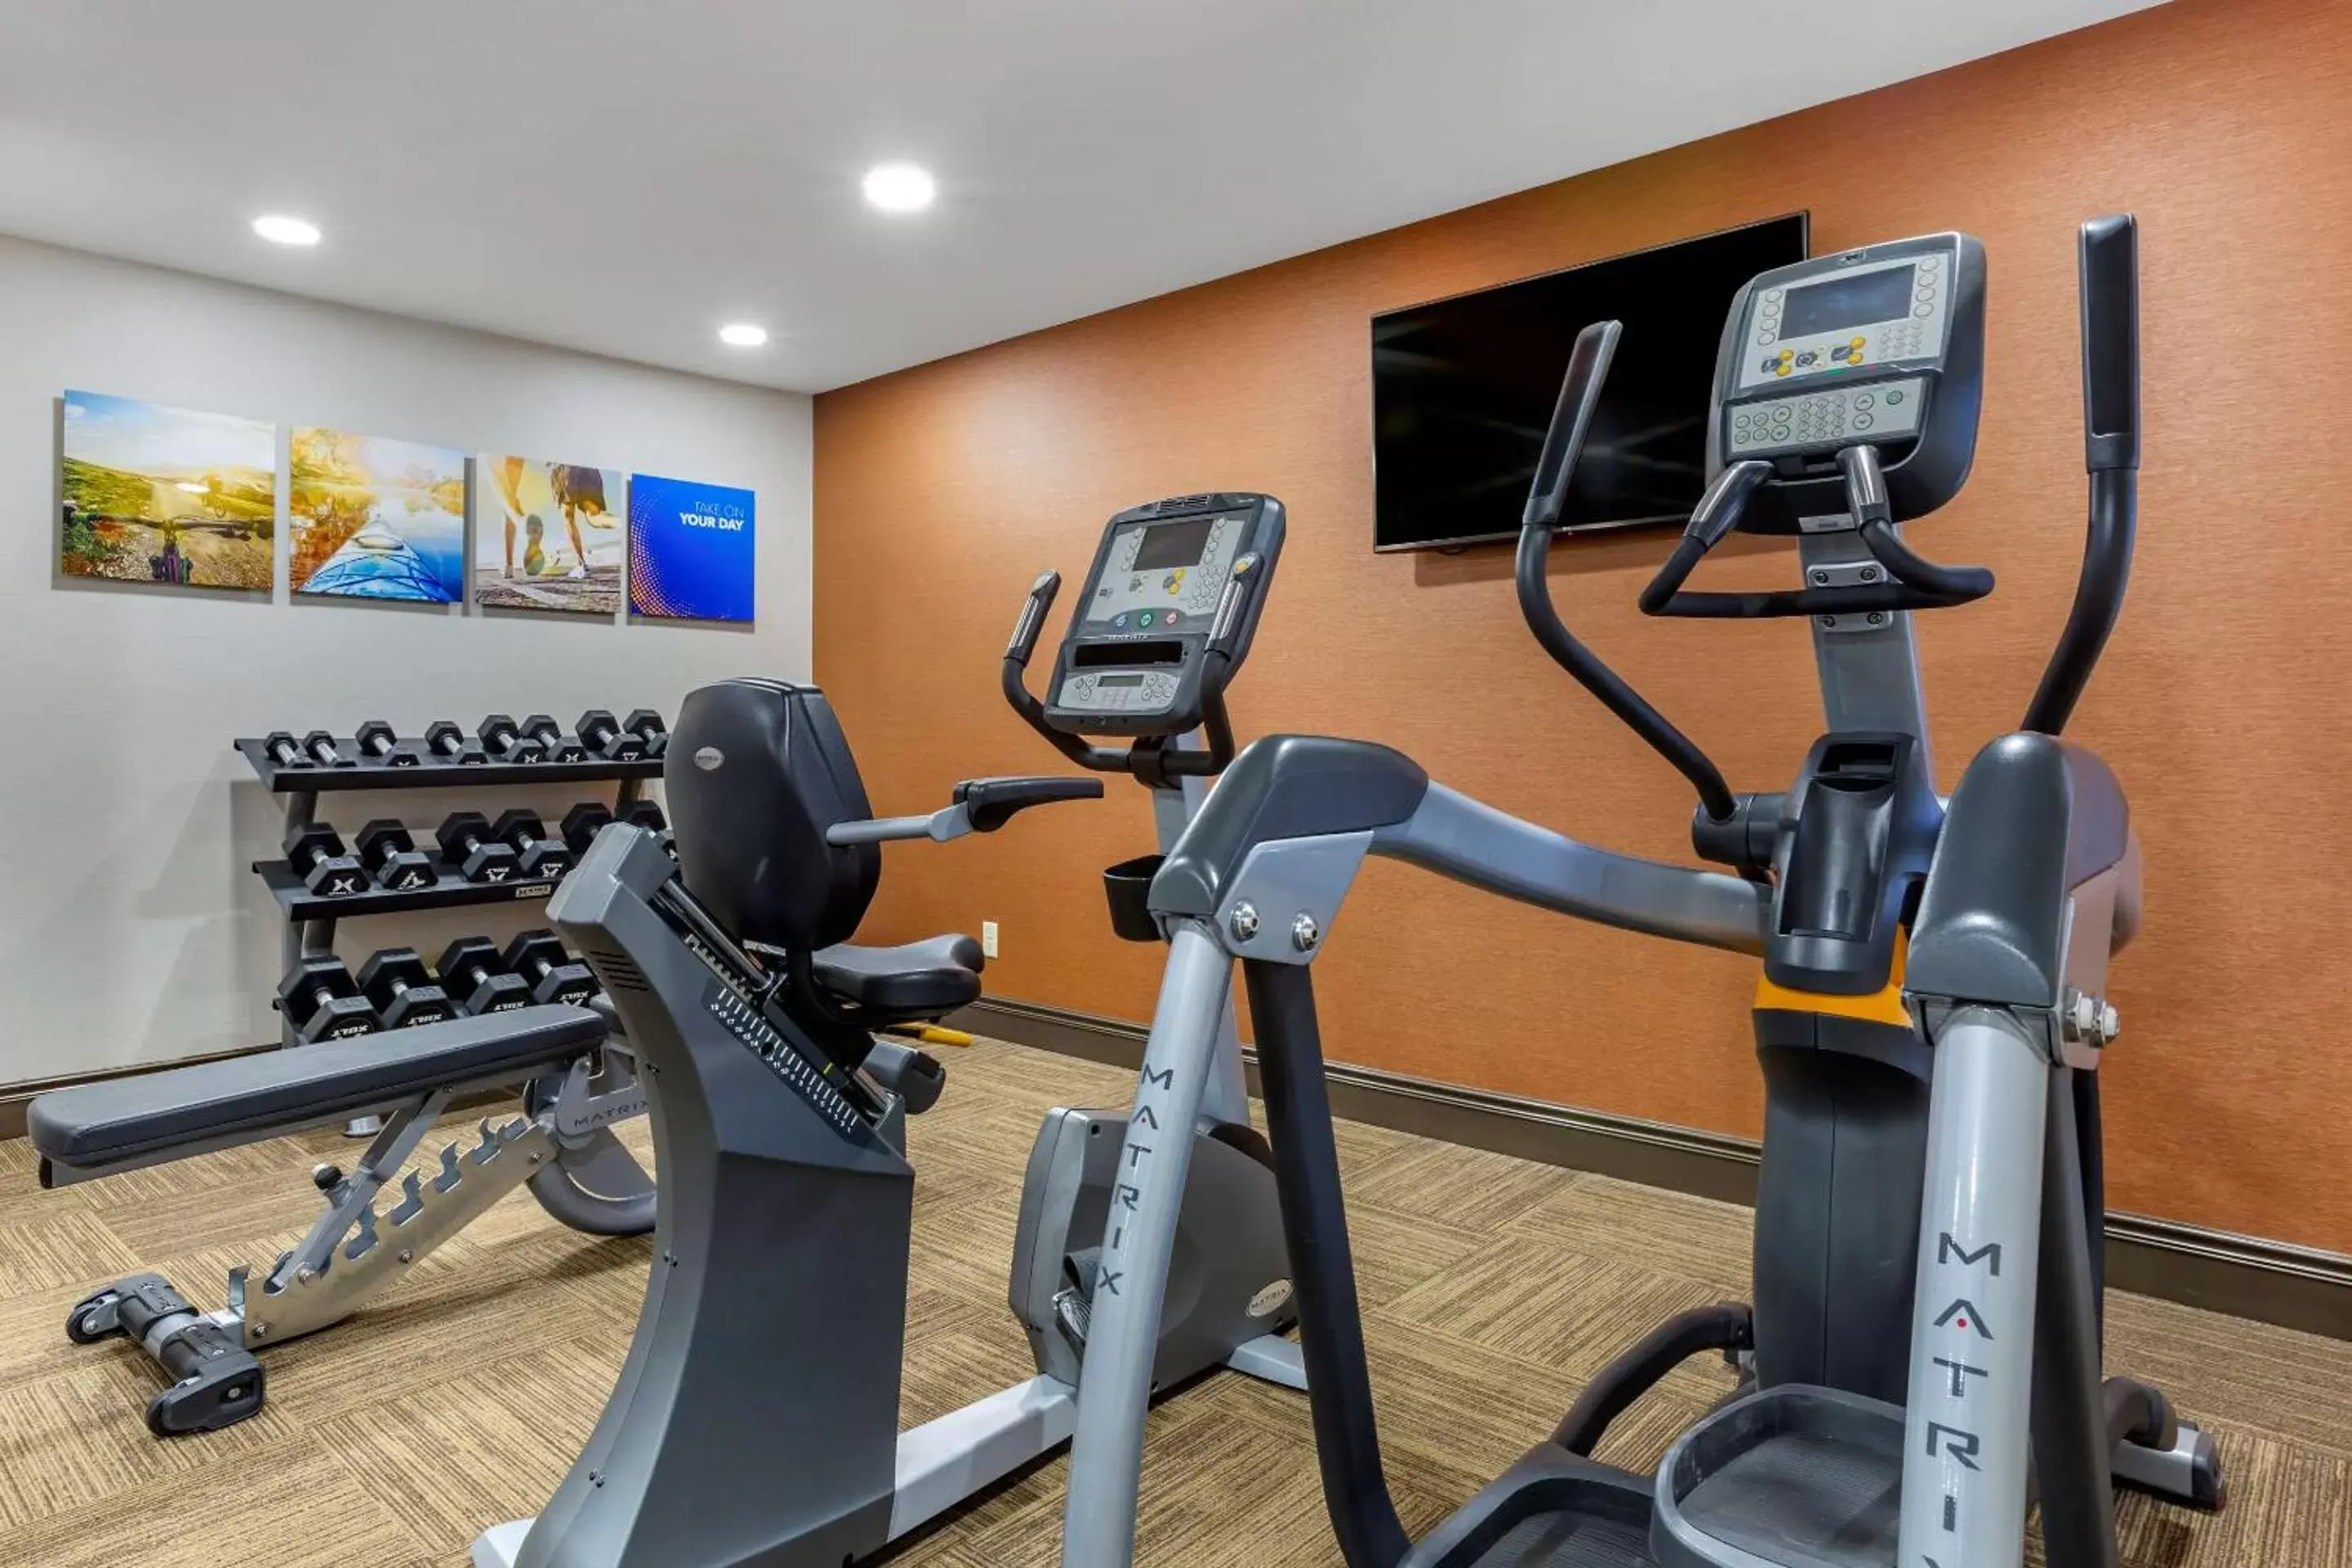 Fitness centre/facilities, Fitness Center/Facilities in Comfort Inn at Buffalo Bill Village Resort